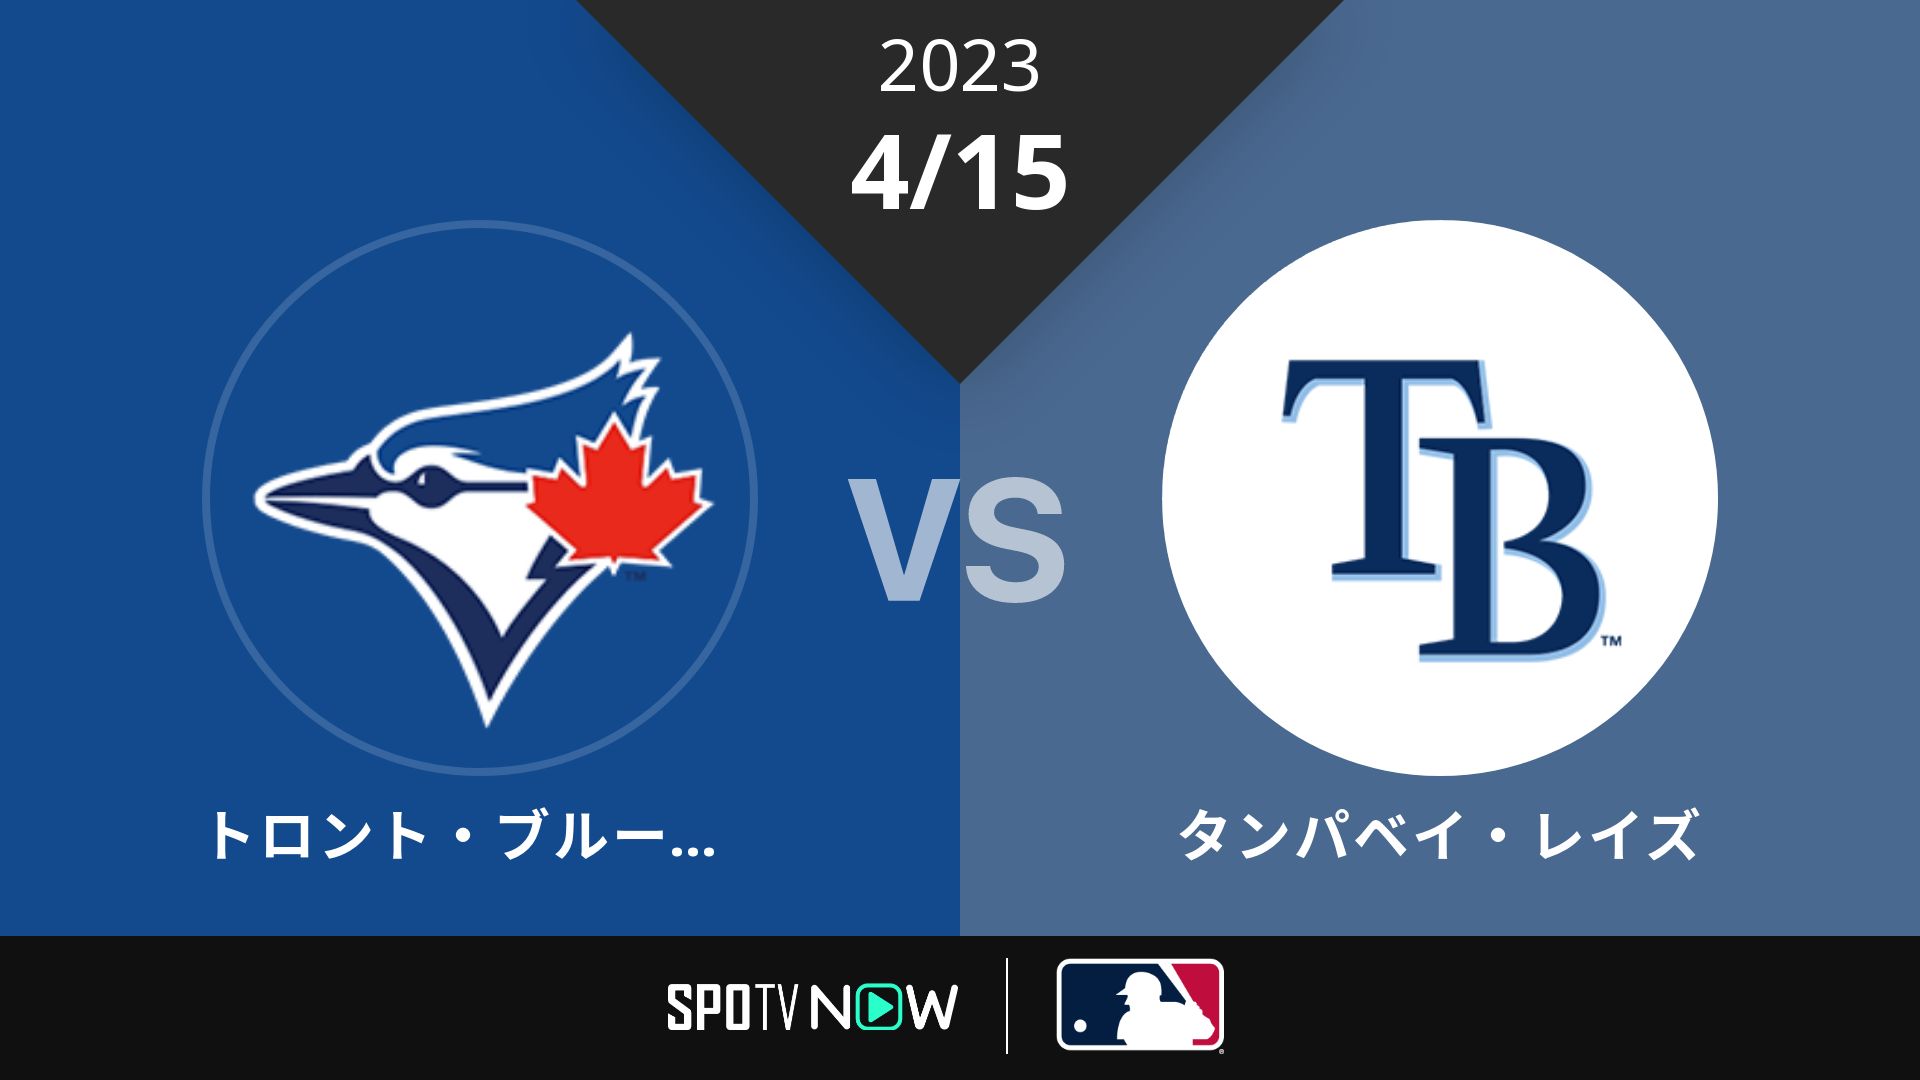 2023/4/15 ブルージェイズ vs レイズ [MLB]